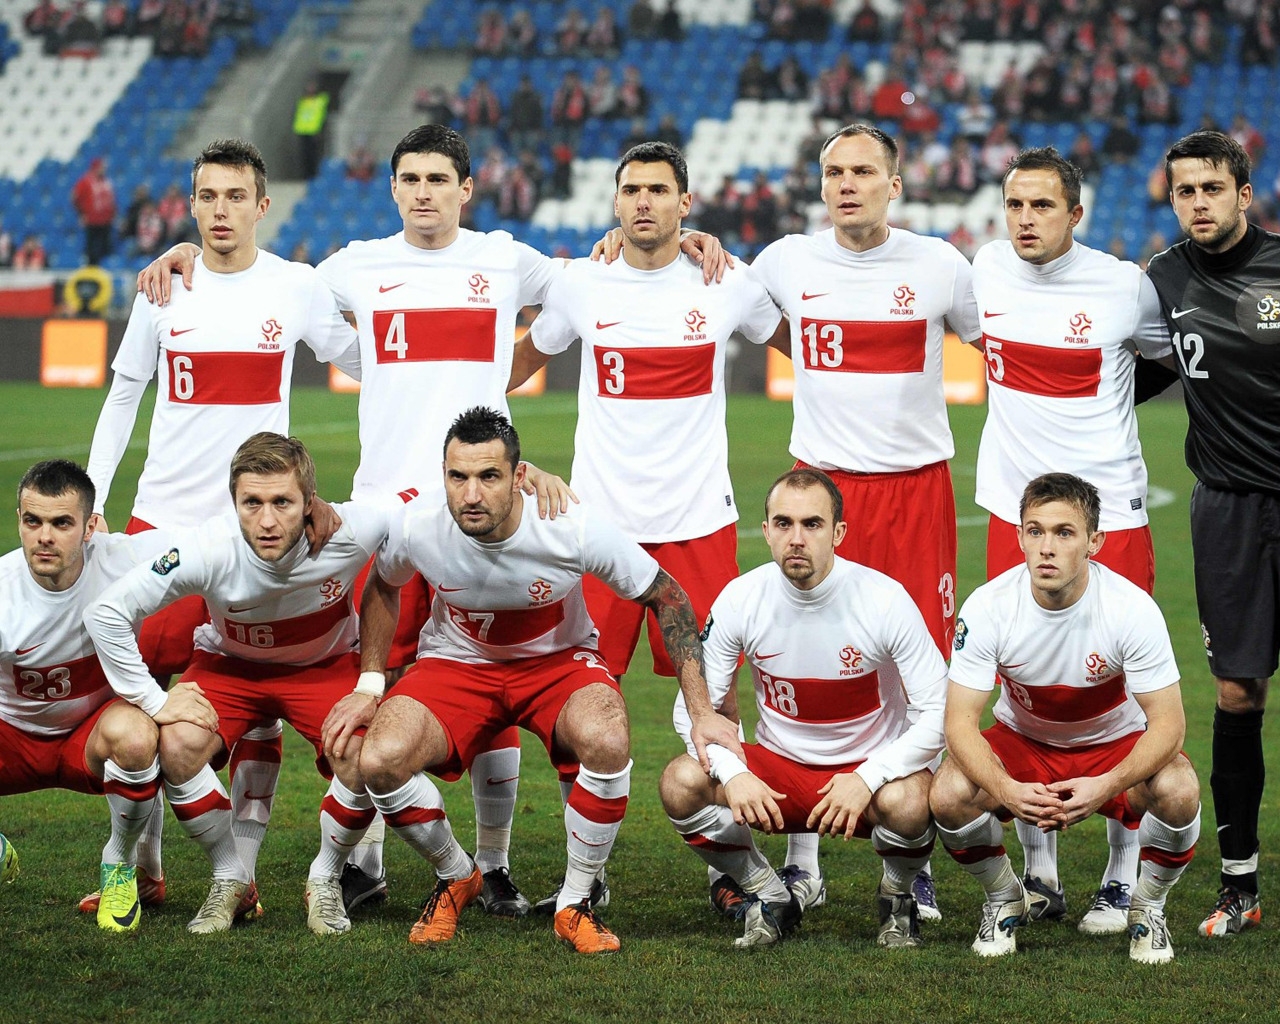 Polska National Team Wallpaper - Сборная Польши Евро 2012 , HD Wallpaper & Backgrounds